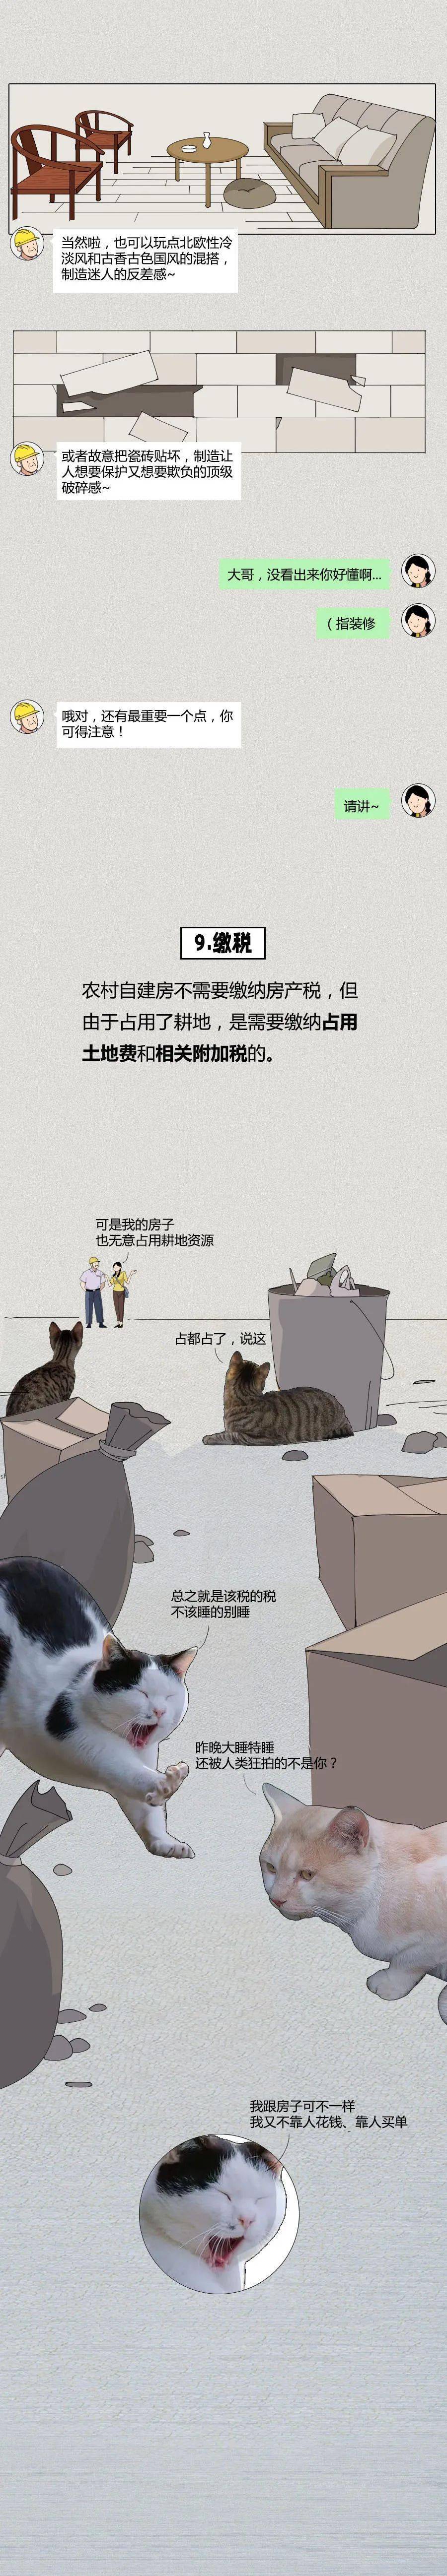 学藏汉语软件苹果版:(可能是）全网最实用的不塌房指南-第16张图片-太平洋在线下载